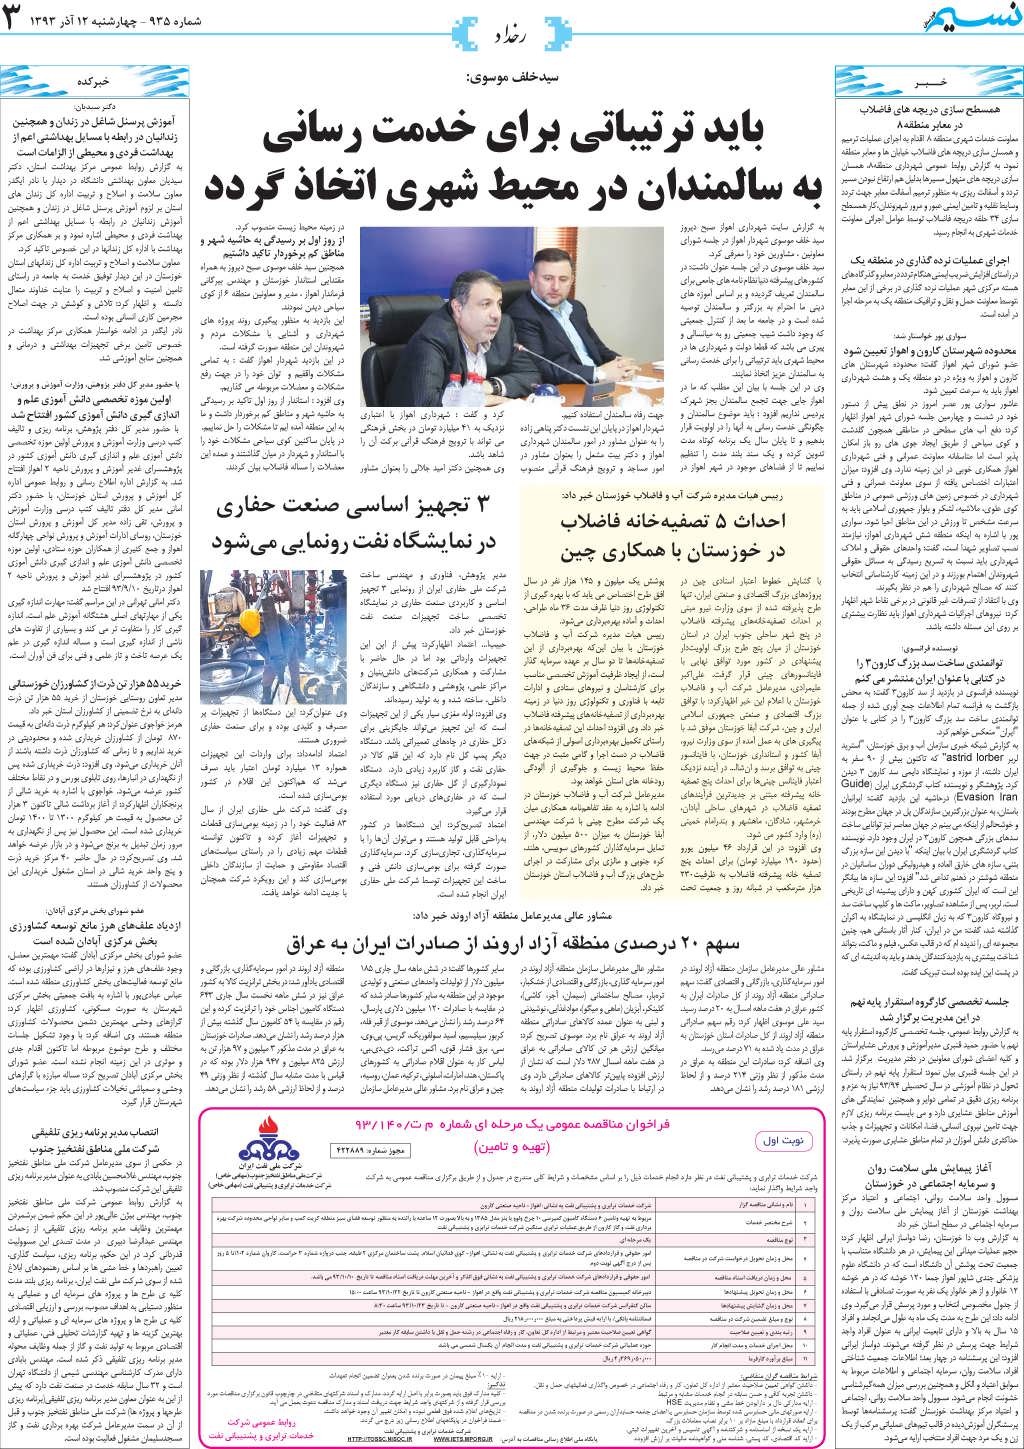 صفحه رخداد روزنامه نسیم شماره 935